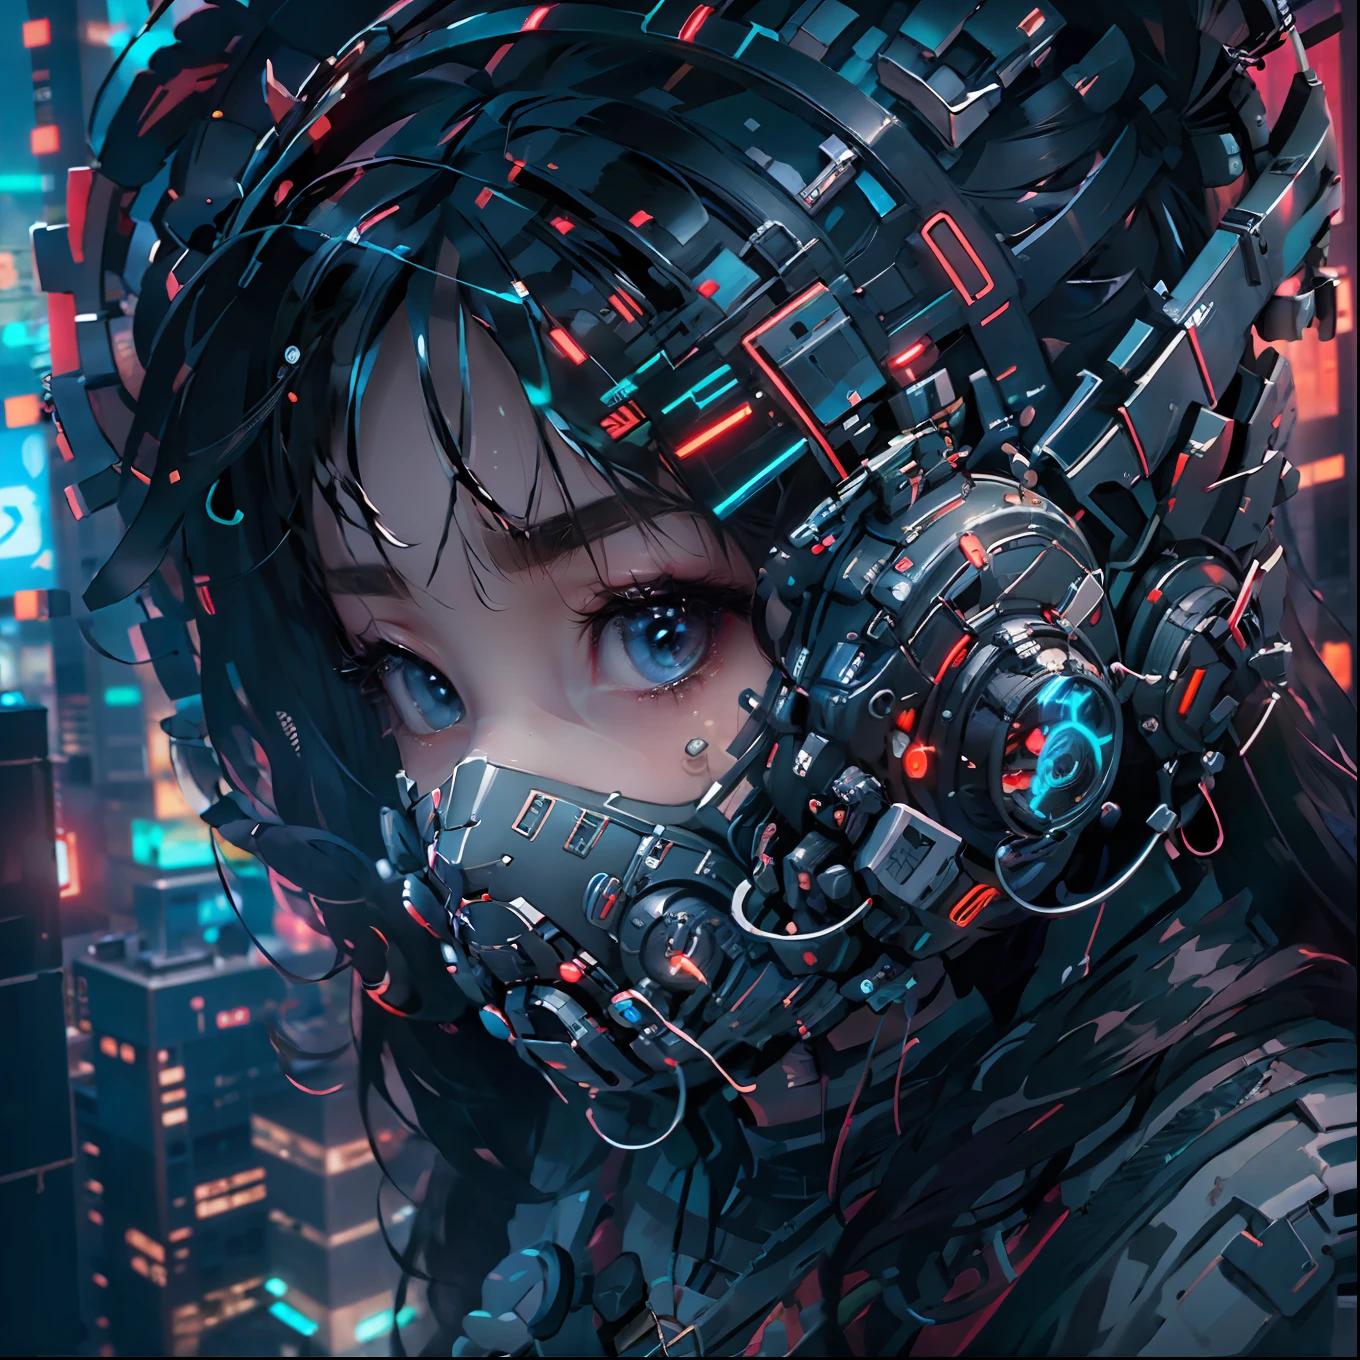 1girl usando uma máscara cyberpunk neon detalhada, seu rosto parcialmente coberto por um pórtico, capturado em um close-up de cima, com um vibrante cenário de cidade cyberpunk.